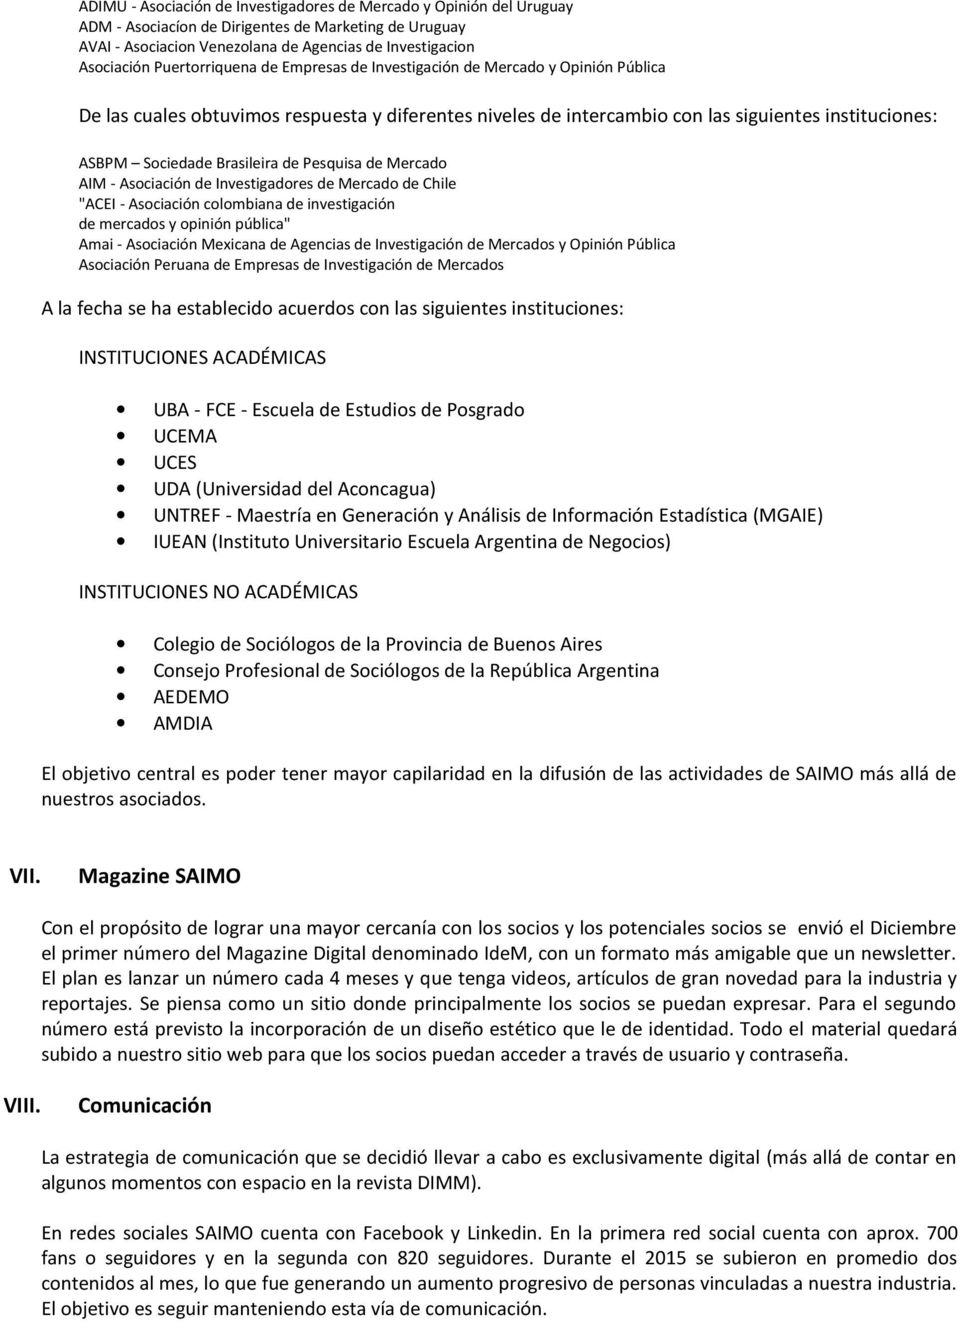 Brasileira de Pesquisa de Mercado AIM - Asociación de Investigadores de Mercado de Chile "ACEI - Asociación colombiana de investigación de mercados y opinión pública" Amai - Asociación Mexicana de